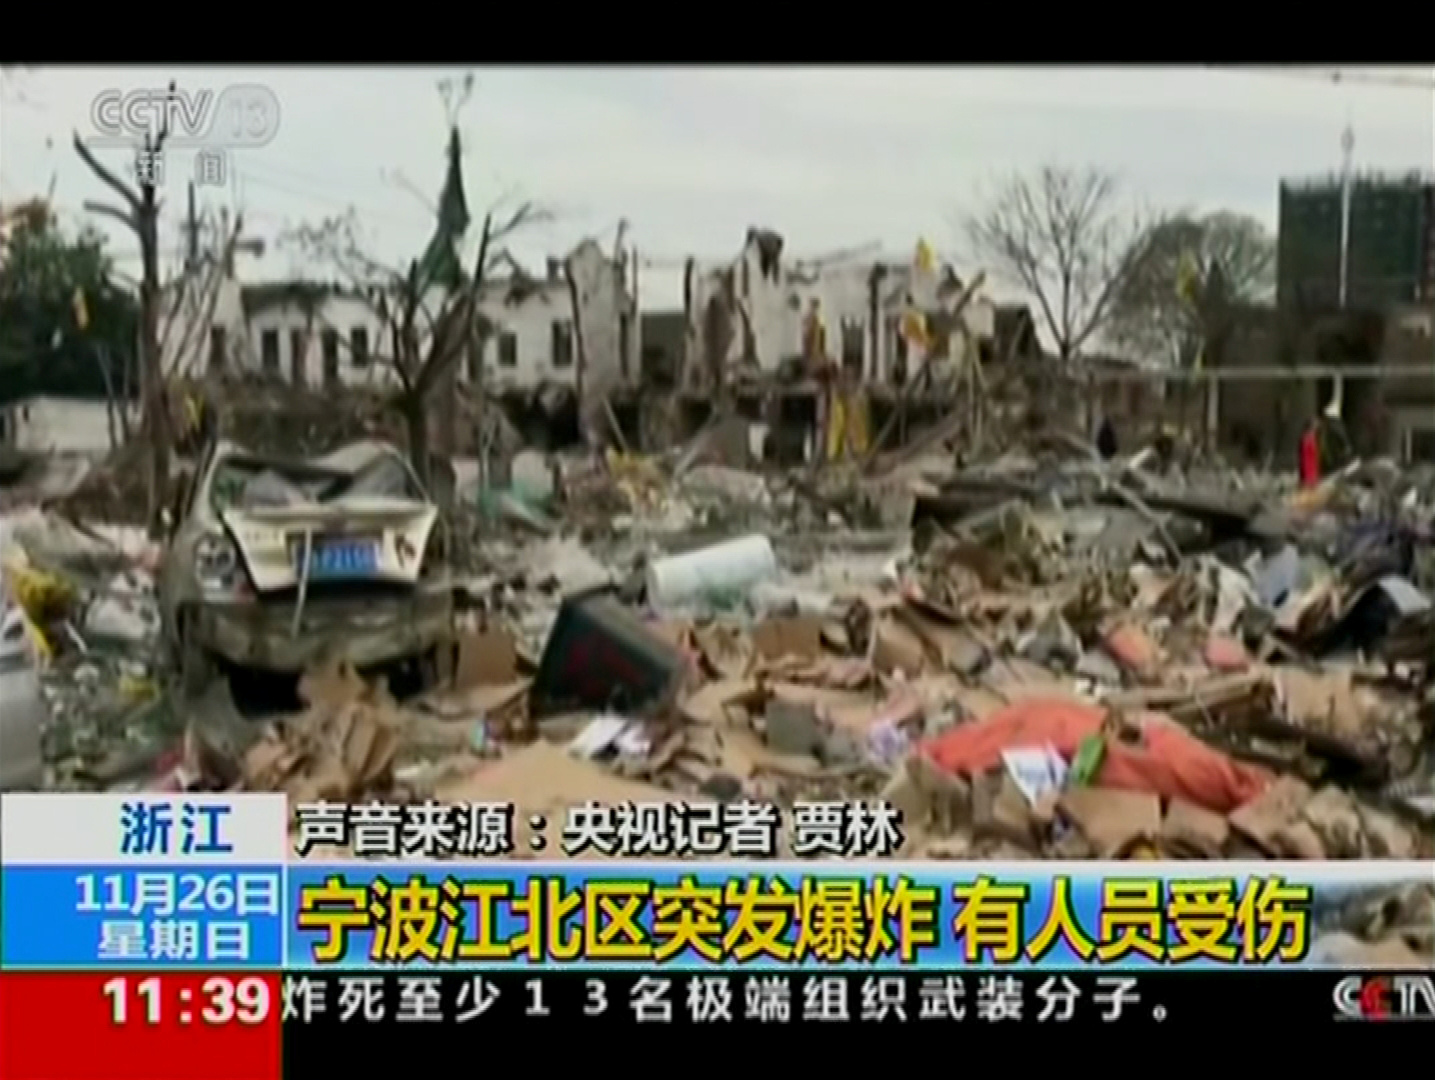 انفجار ضخم فى مصنع شرق الصين